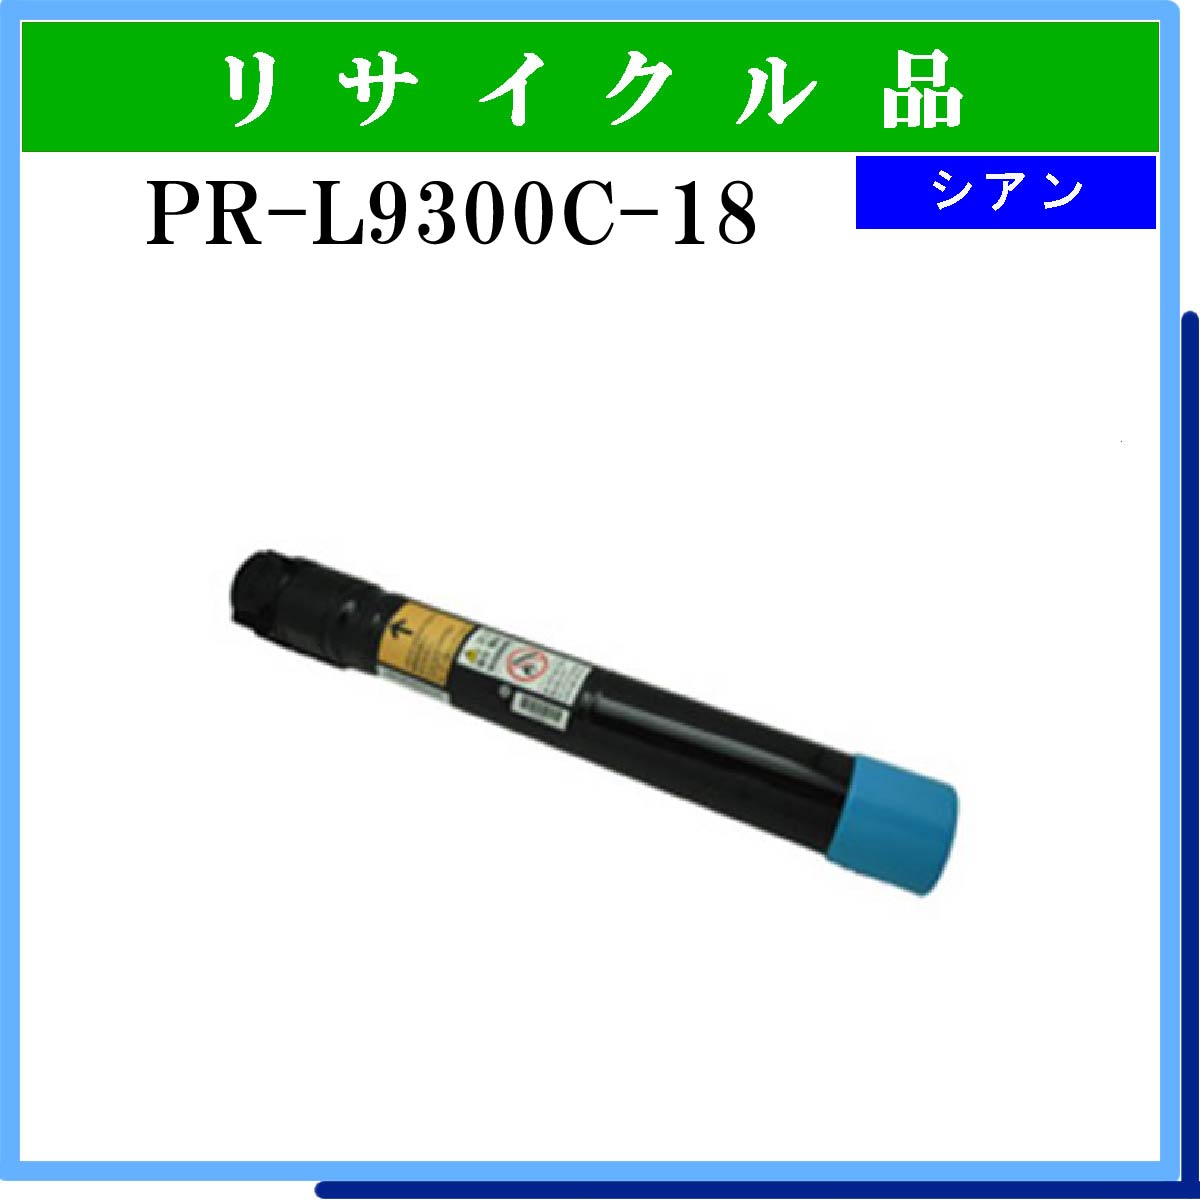 新品高評価 PR-L9700C-18 タイプトナー シアン 汎用品 NB-TNL9700-18